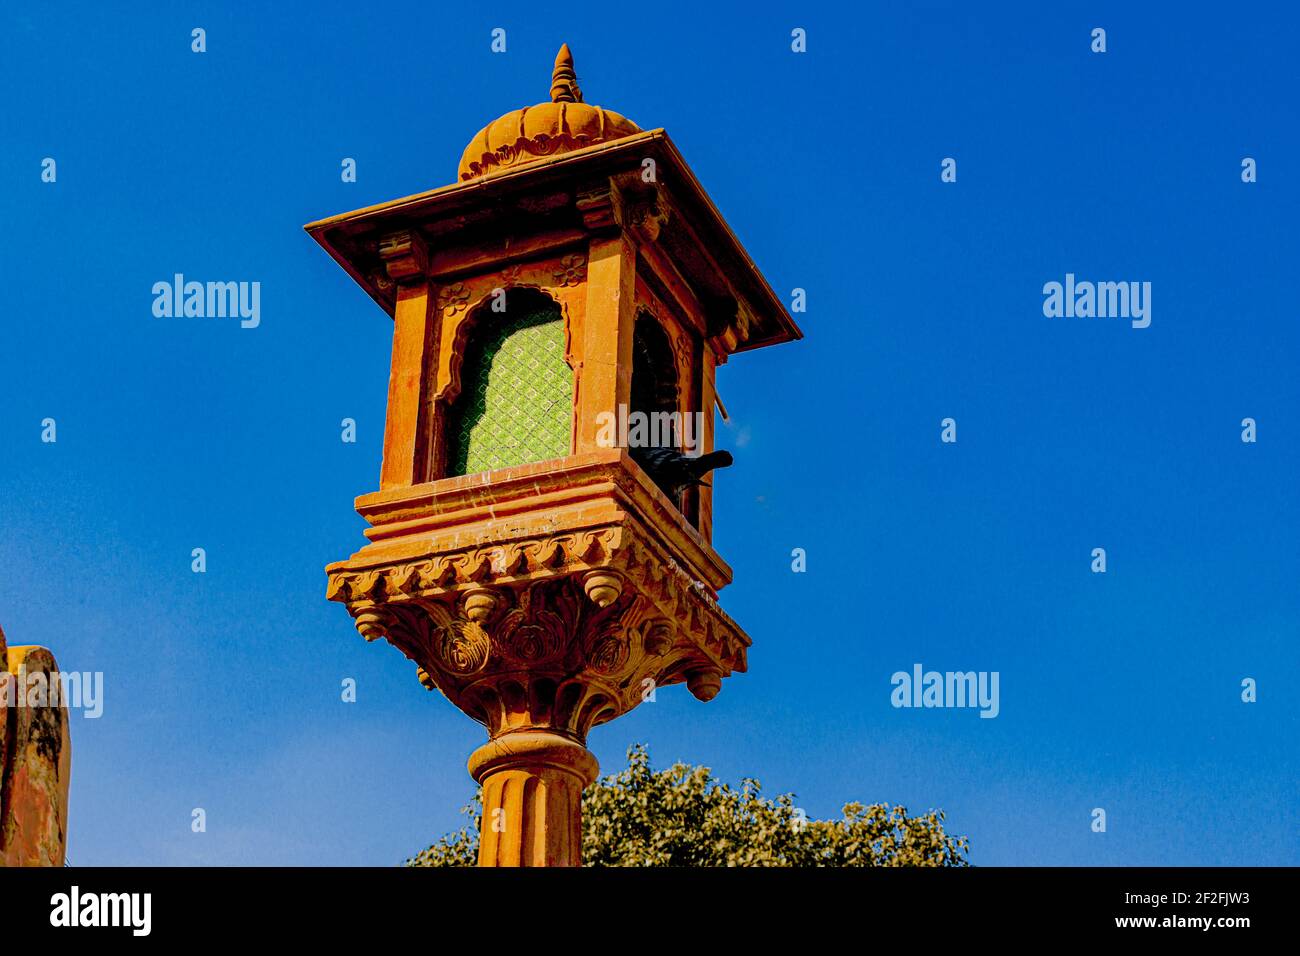 Schöne Gemälde, Kunst, Design-Denkmäler, Tempel, Architekturen im Zustand der königlichen Geschichte Indiens der große Rajasthan. Stockfoto